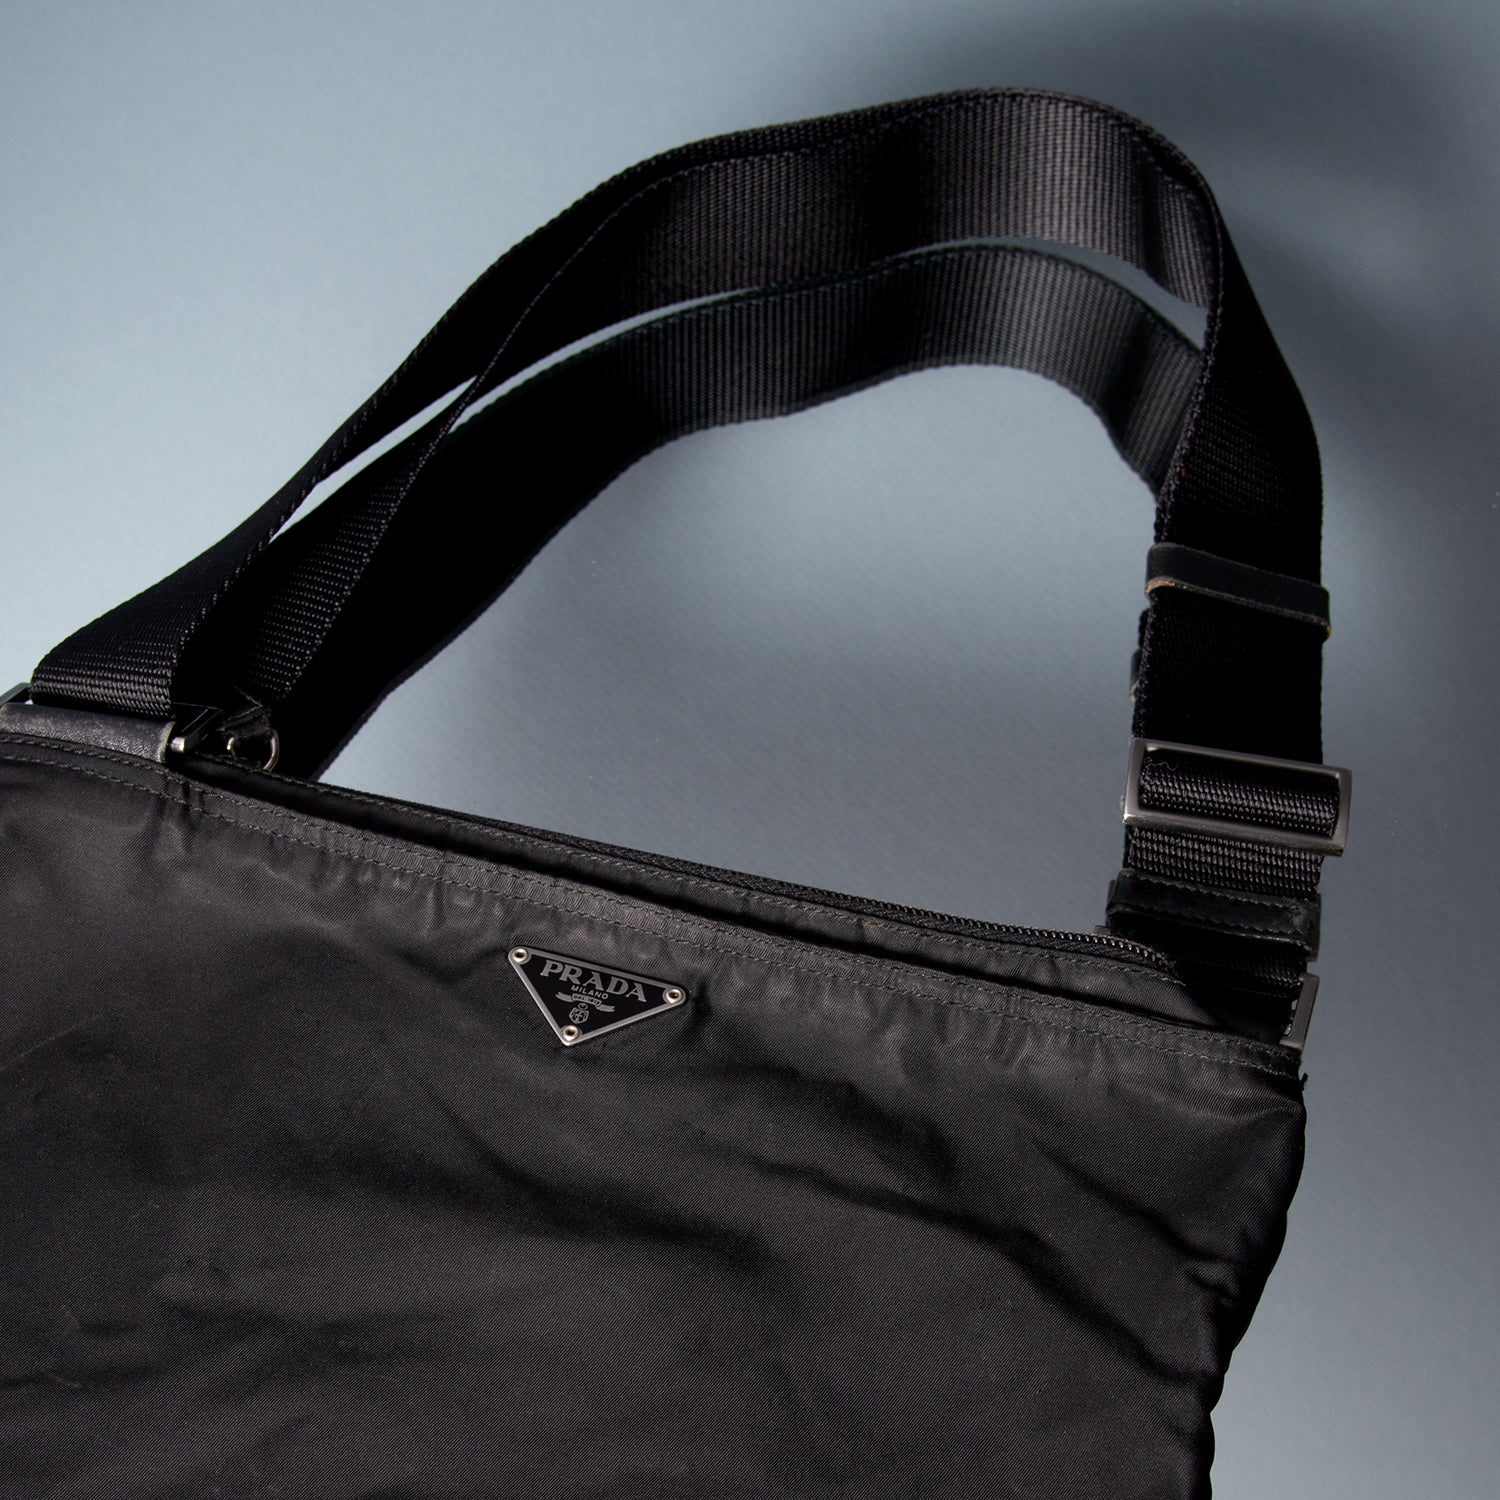 Authenticating Your Prada Handbag - A Guide to Buying Secondhand Prada